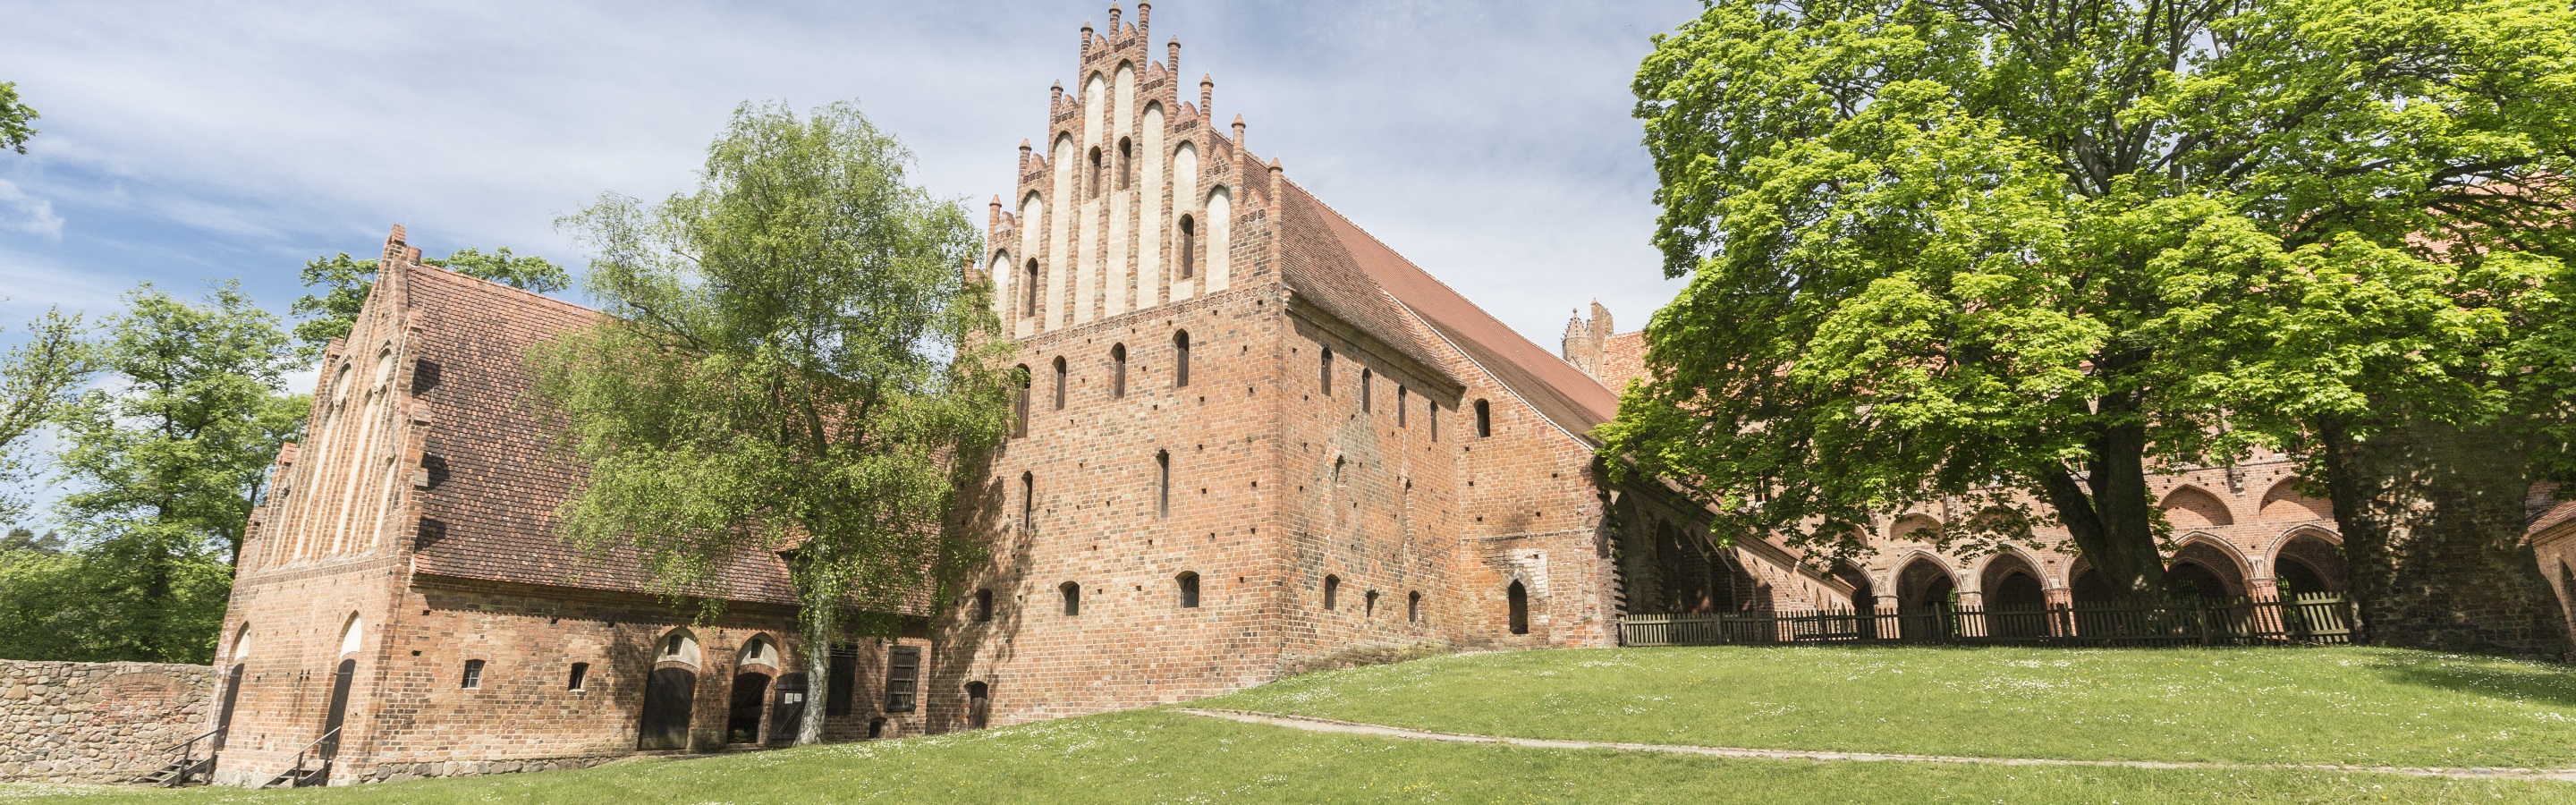 Kloster Chorin: Zeitreise in die Gotik